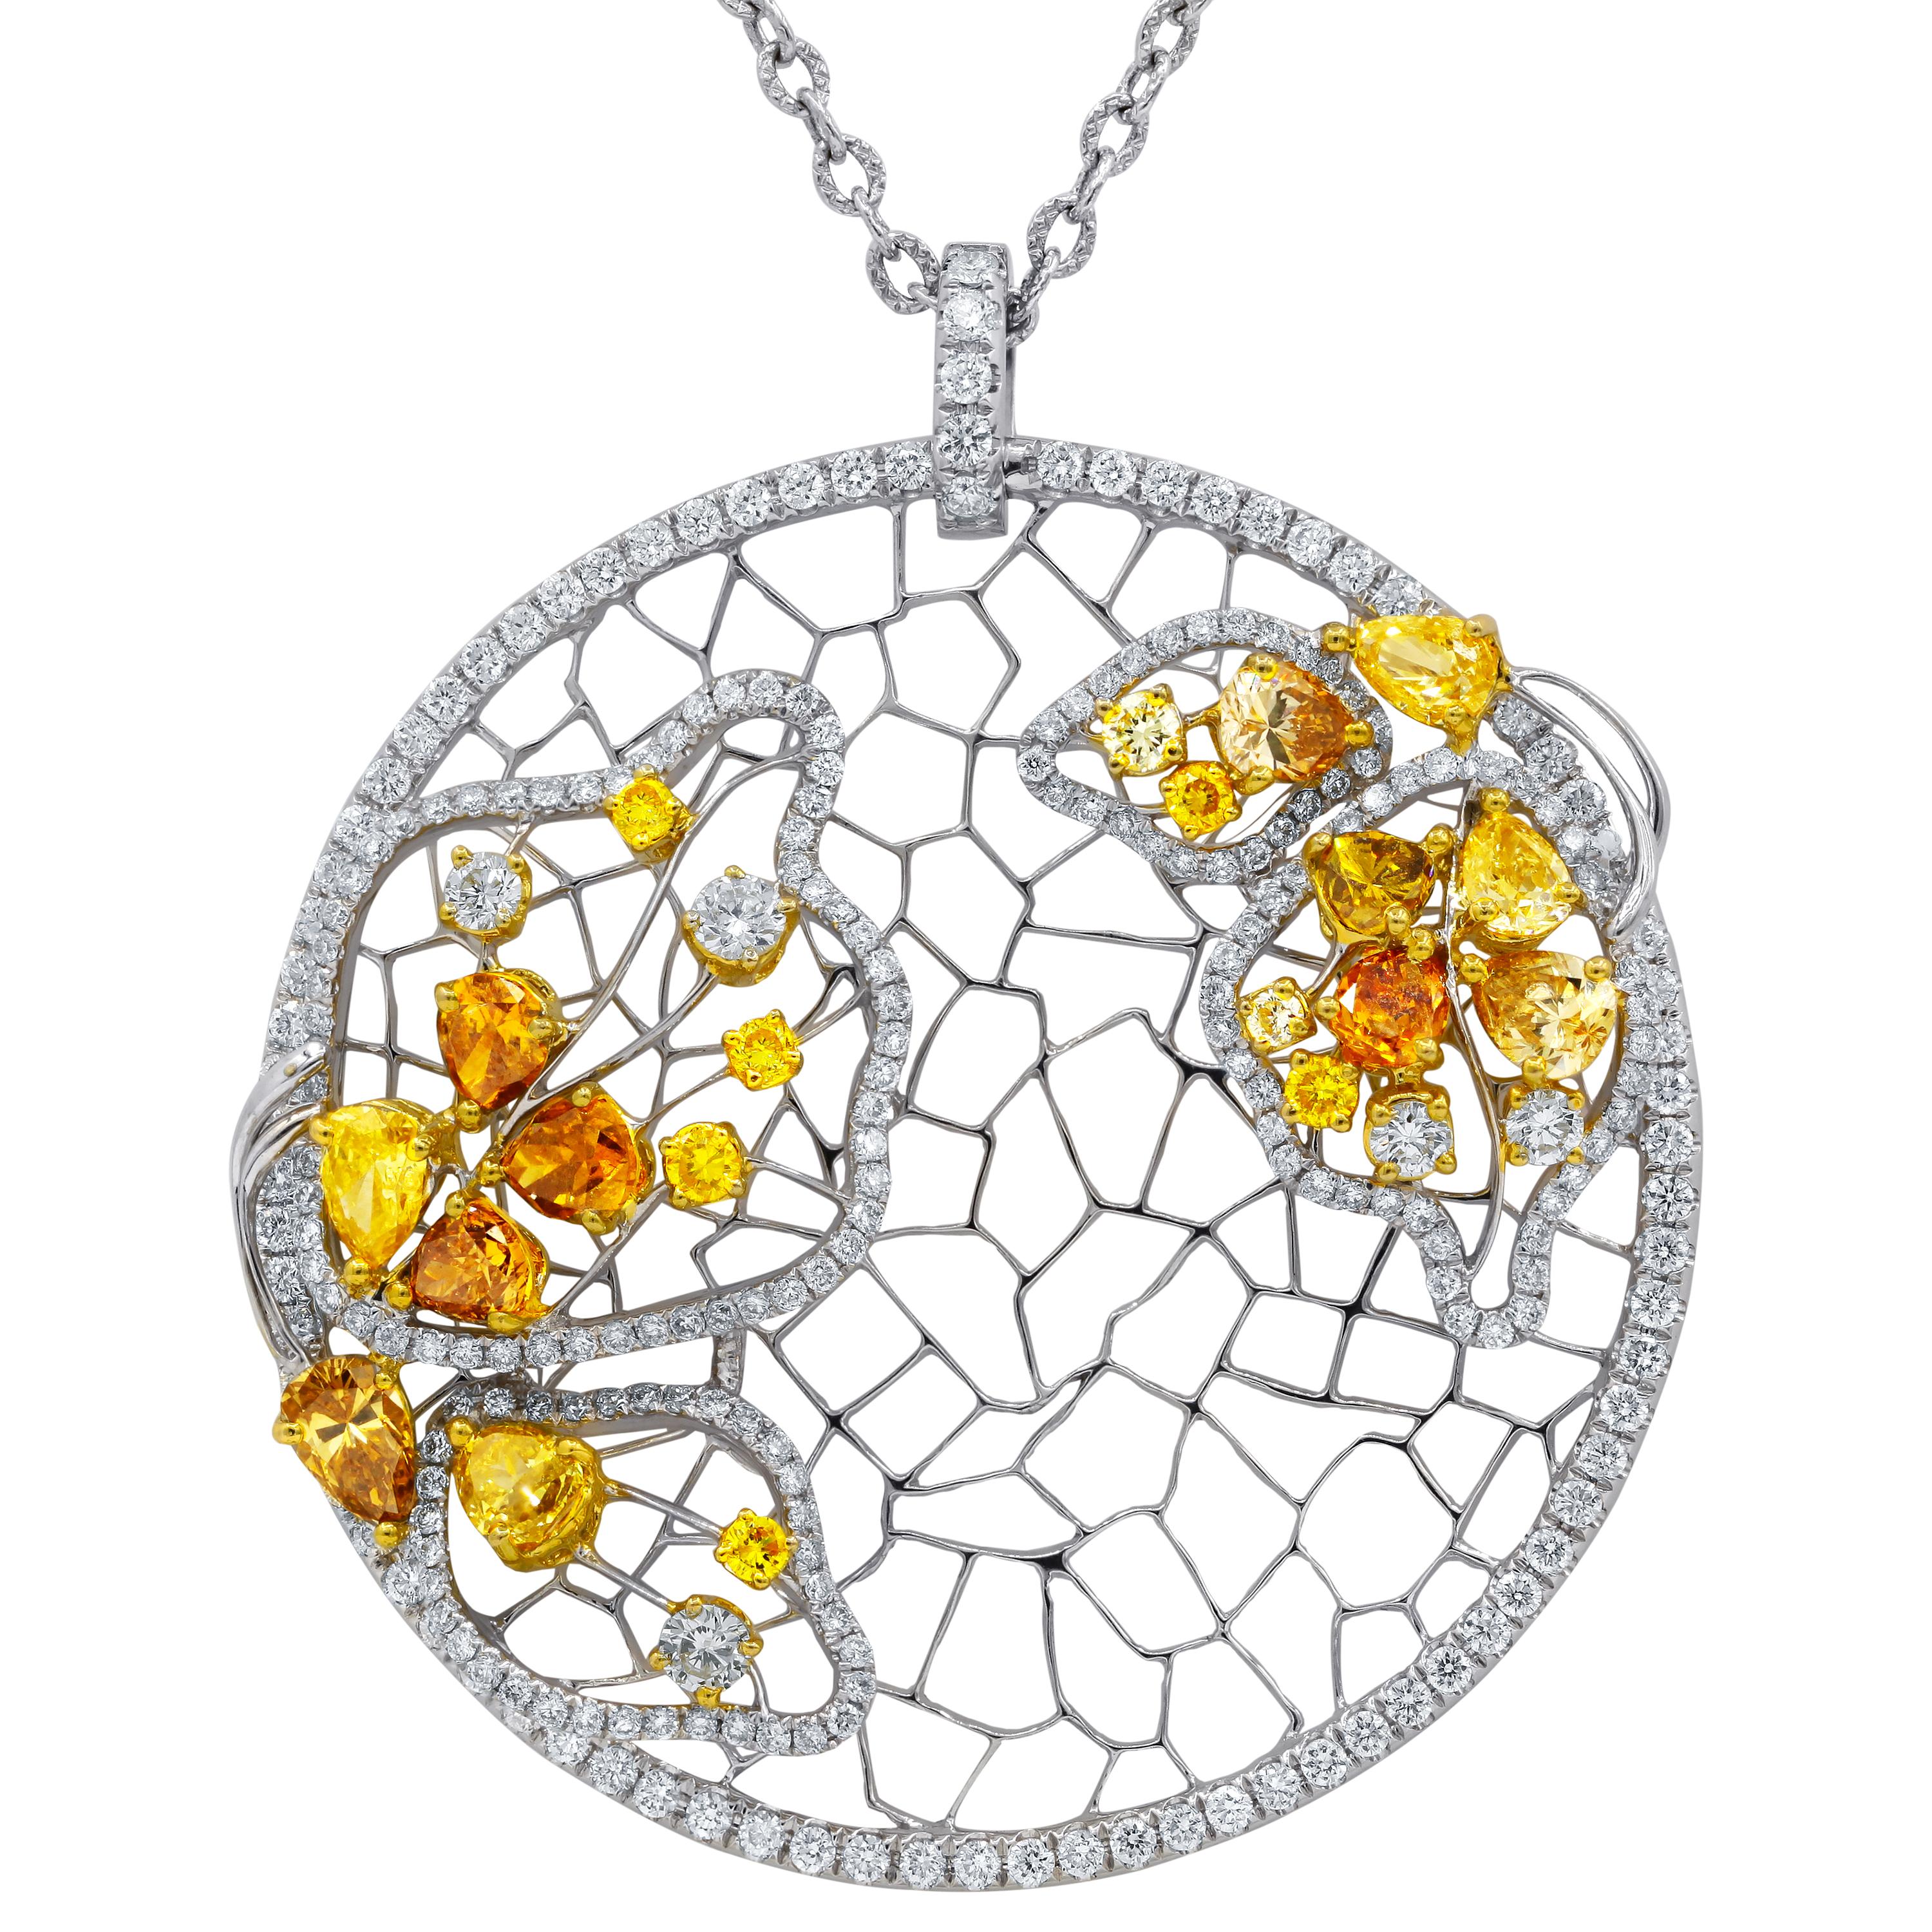 18kt Weißgold Diamant Anhänger Halskette verfügt über 5,59 Karat von Diamanten einschließlich fancy gelb und weiß.
